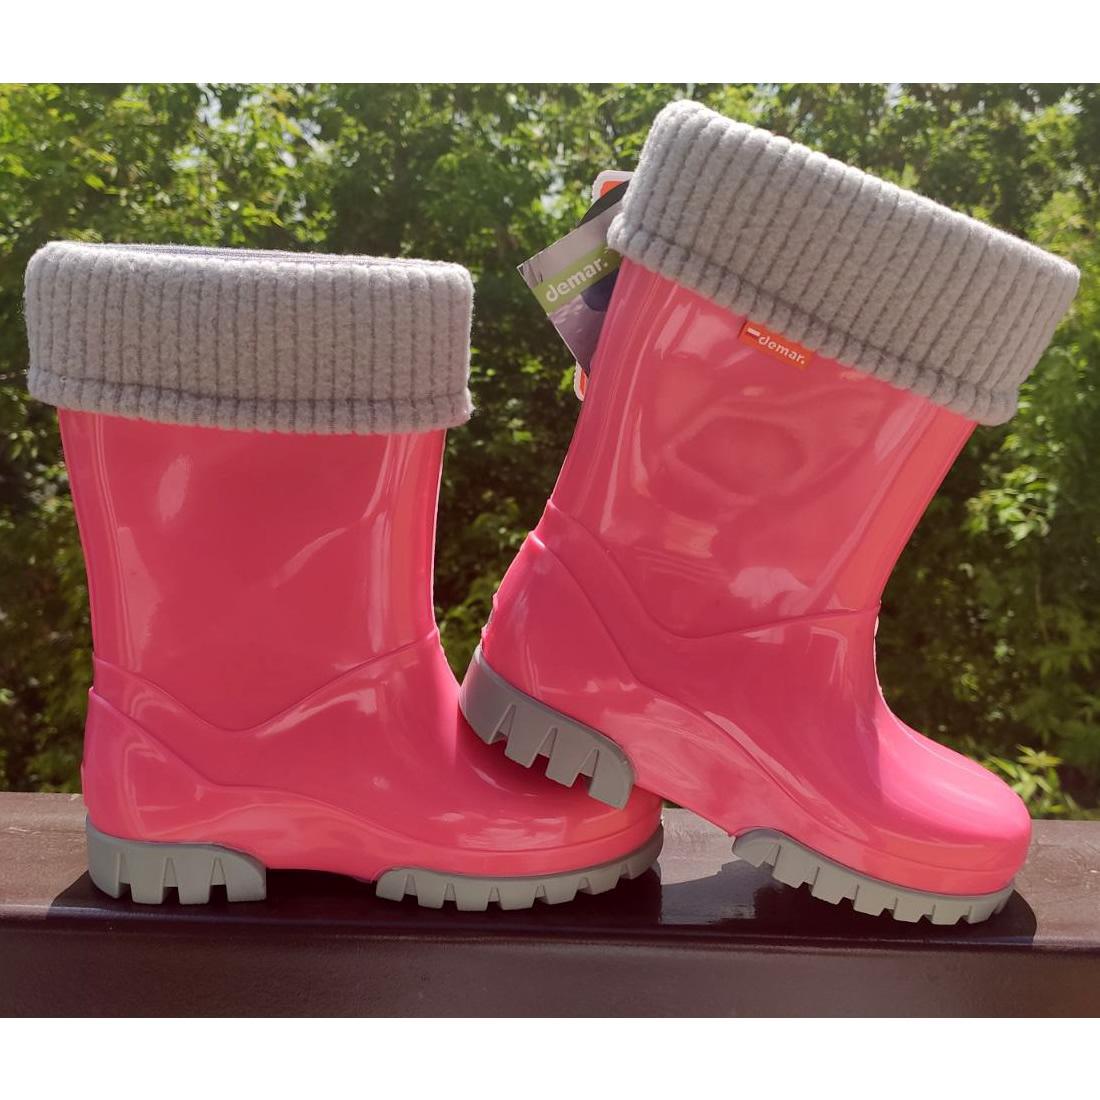 Дитячі гумові чоботи TWISTER LUX, світло-рожеві (0406, 0407), Demar (Демар)